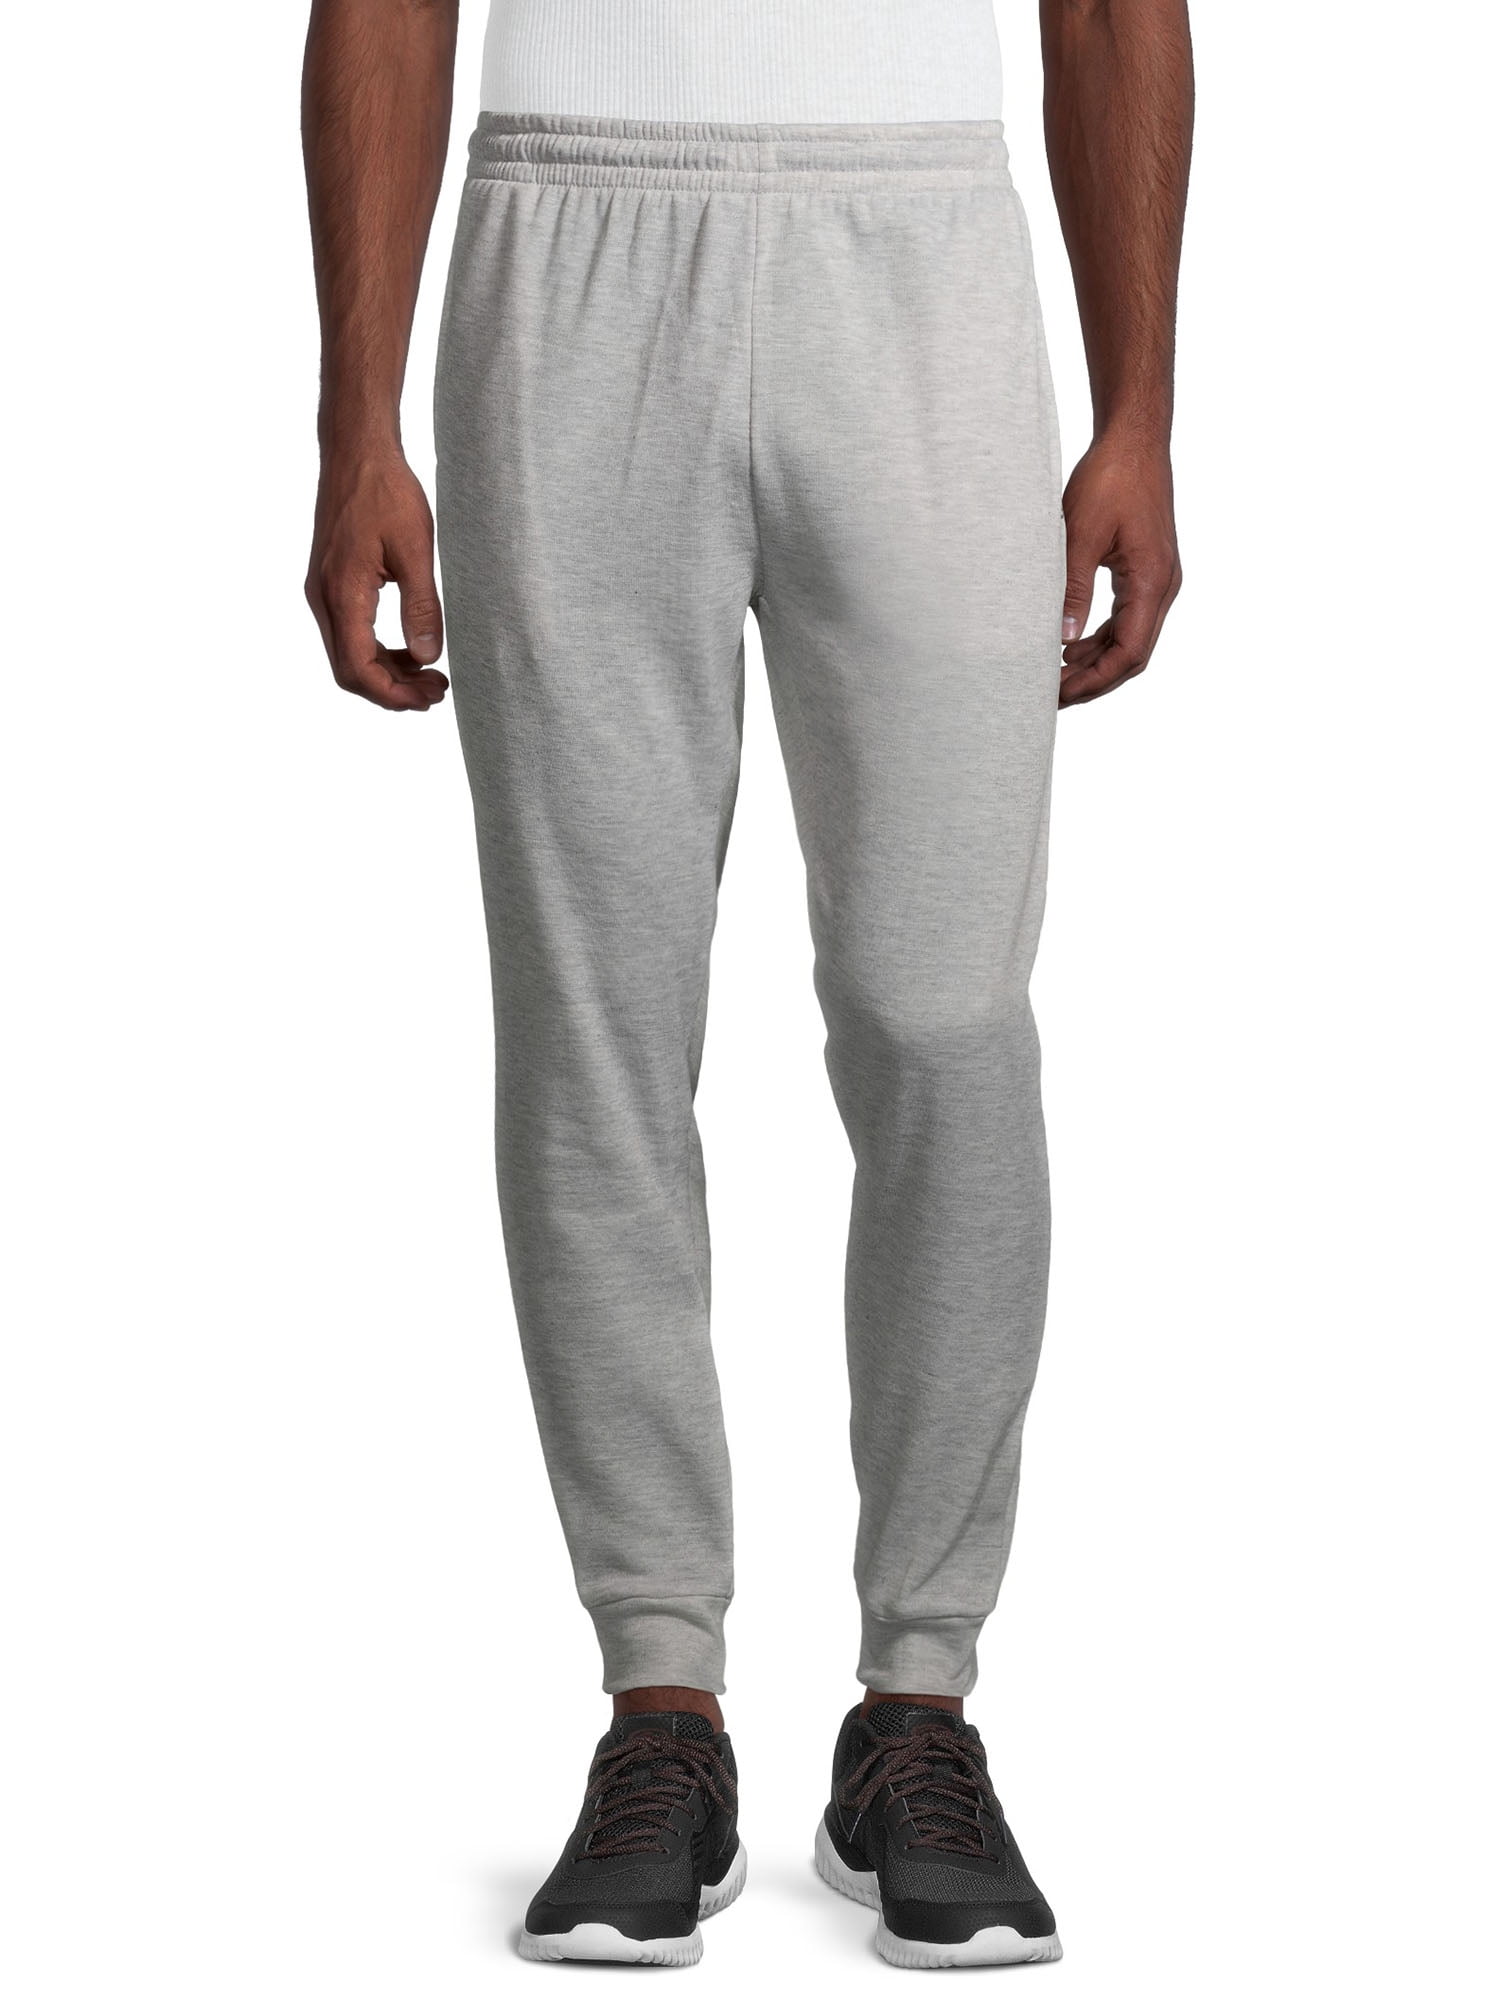 Unipro Men's Fleece Solid Sweatpants - Walmart.com